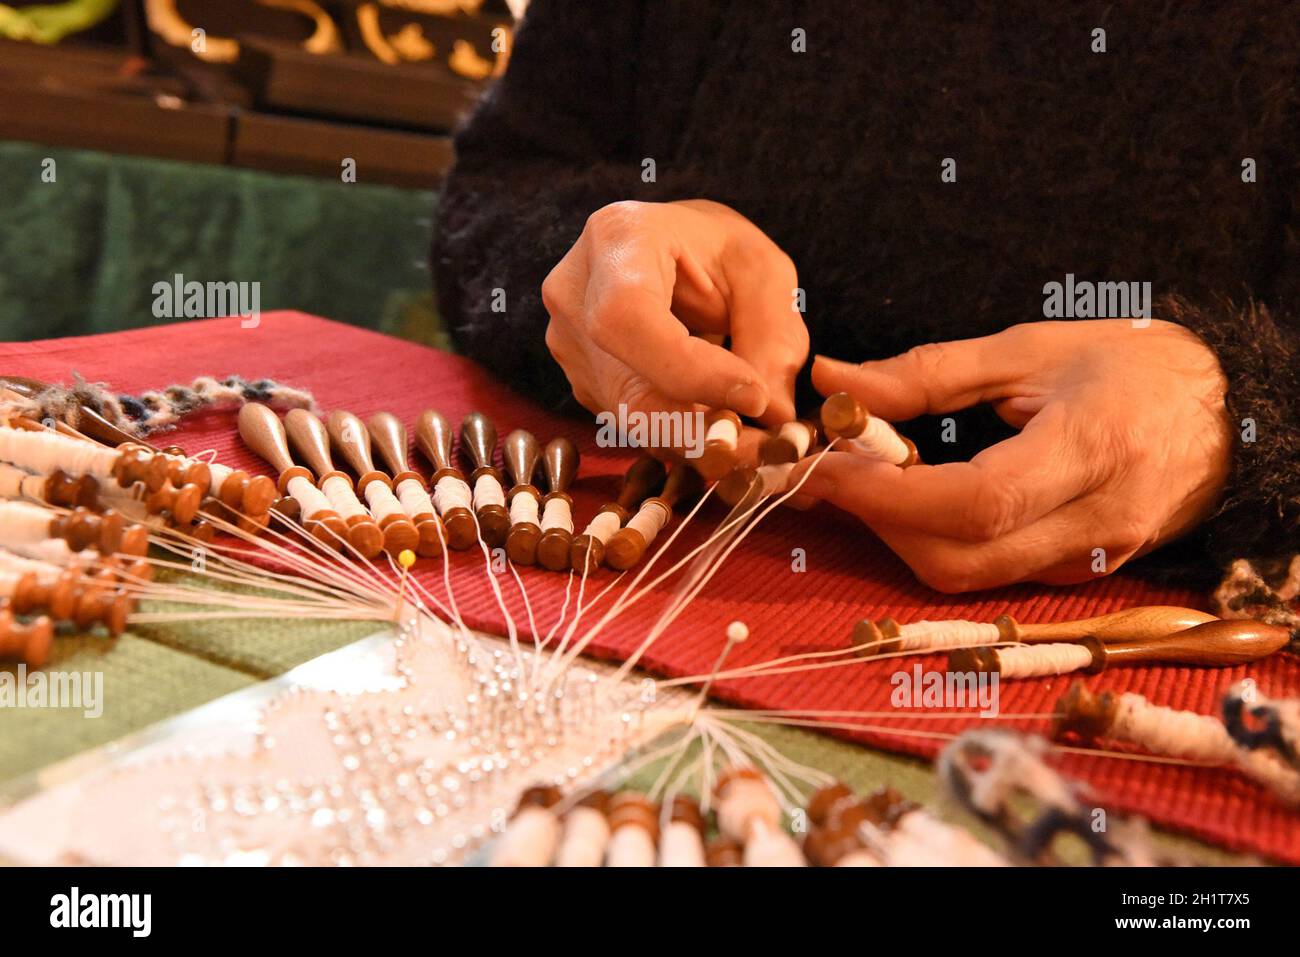 Die alte Handwerkstechnik des Klöppelns in Österreich - The old craft technique of lace making in Austria Stock Photo